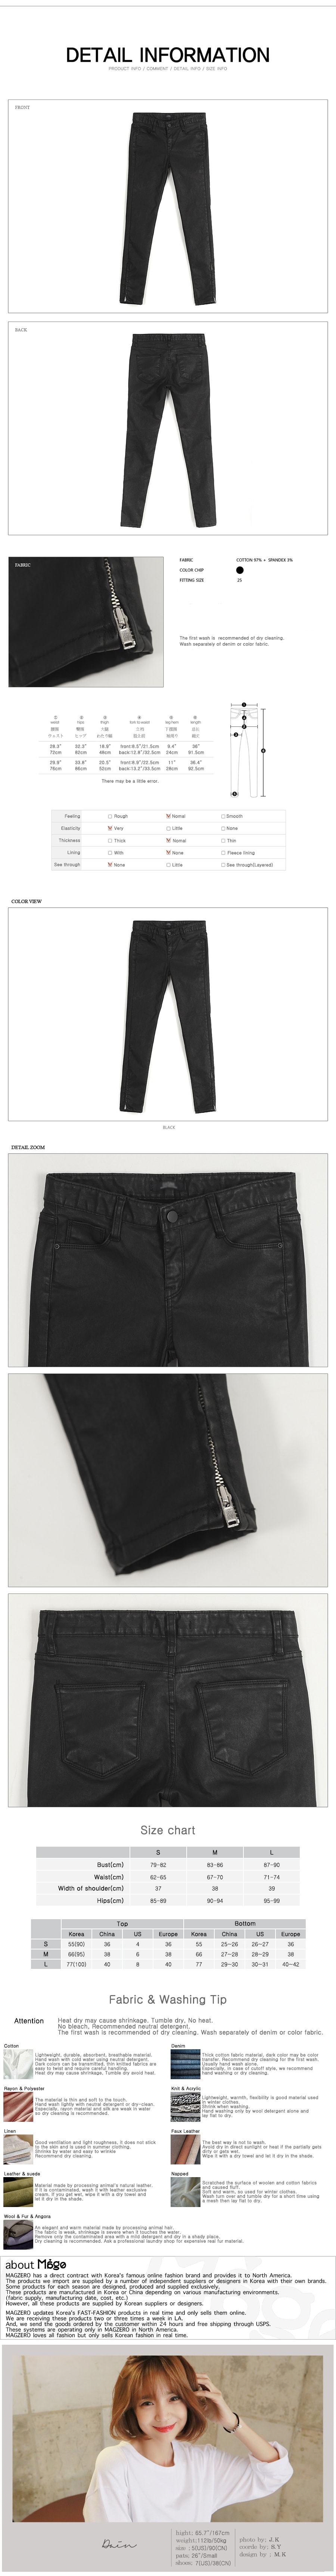 韩国MAGZERO [秋季新品] 侧拉链修身裤 Black M(66/27-28)